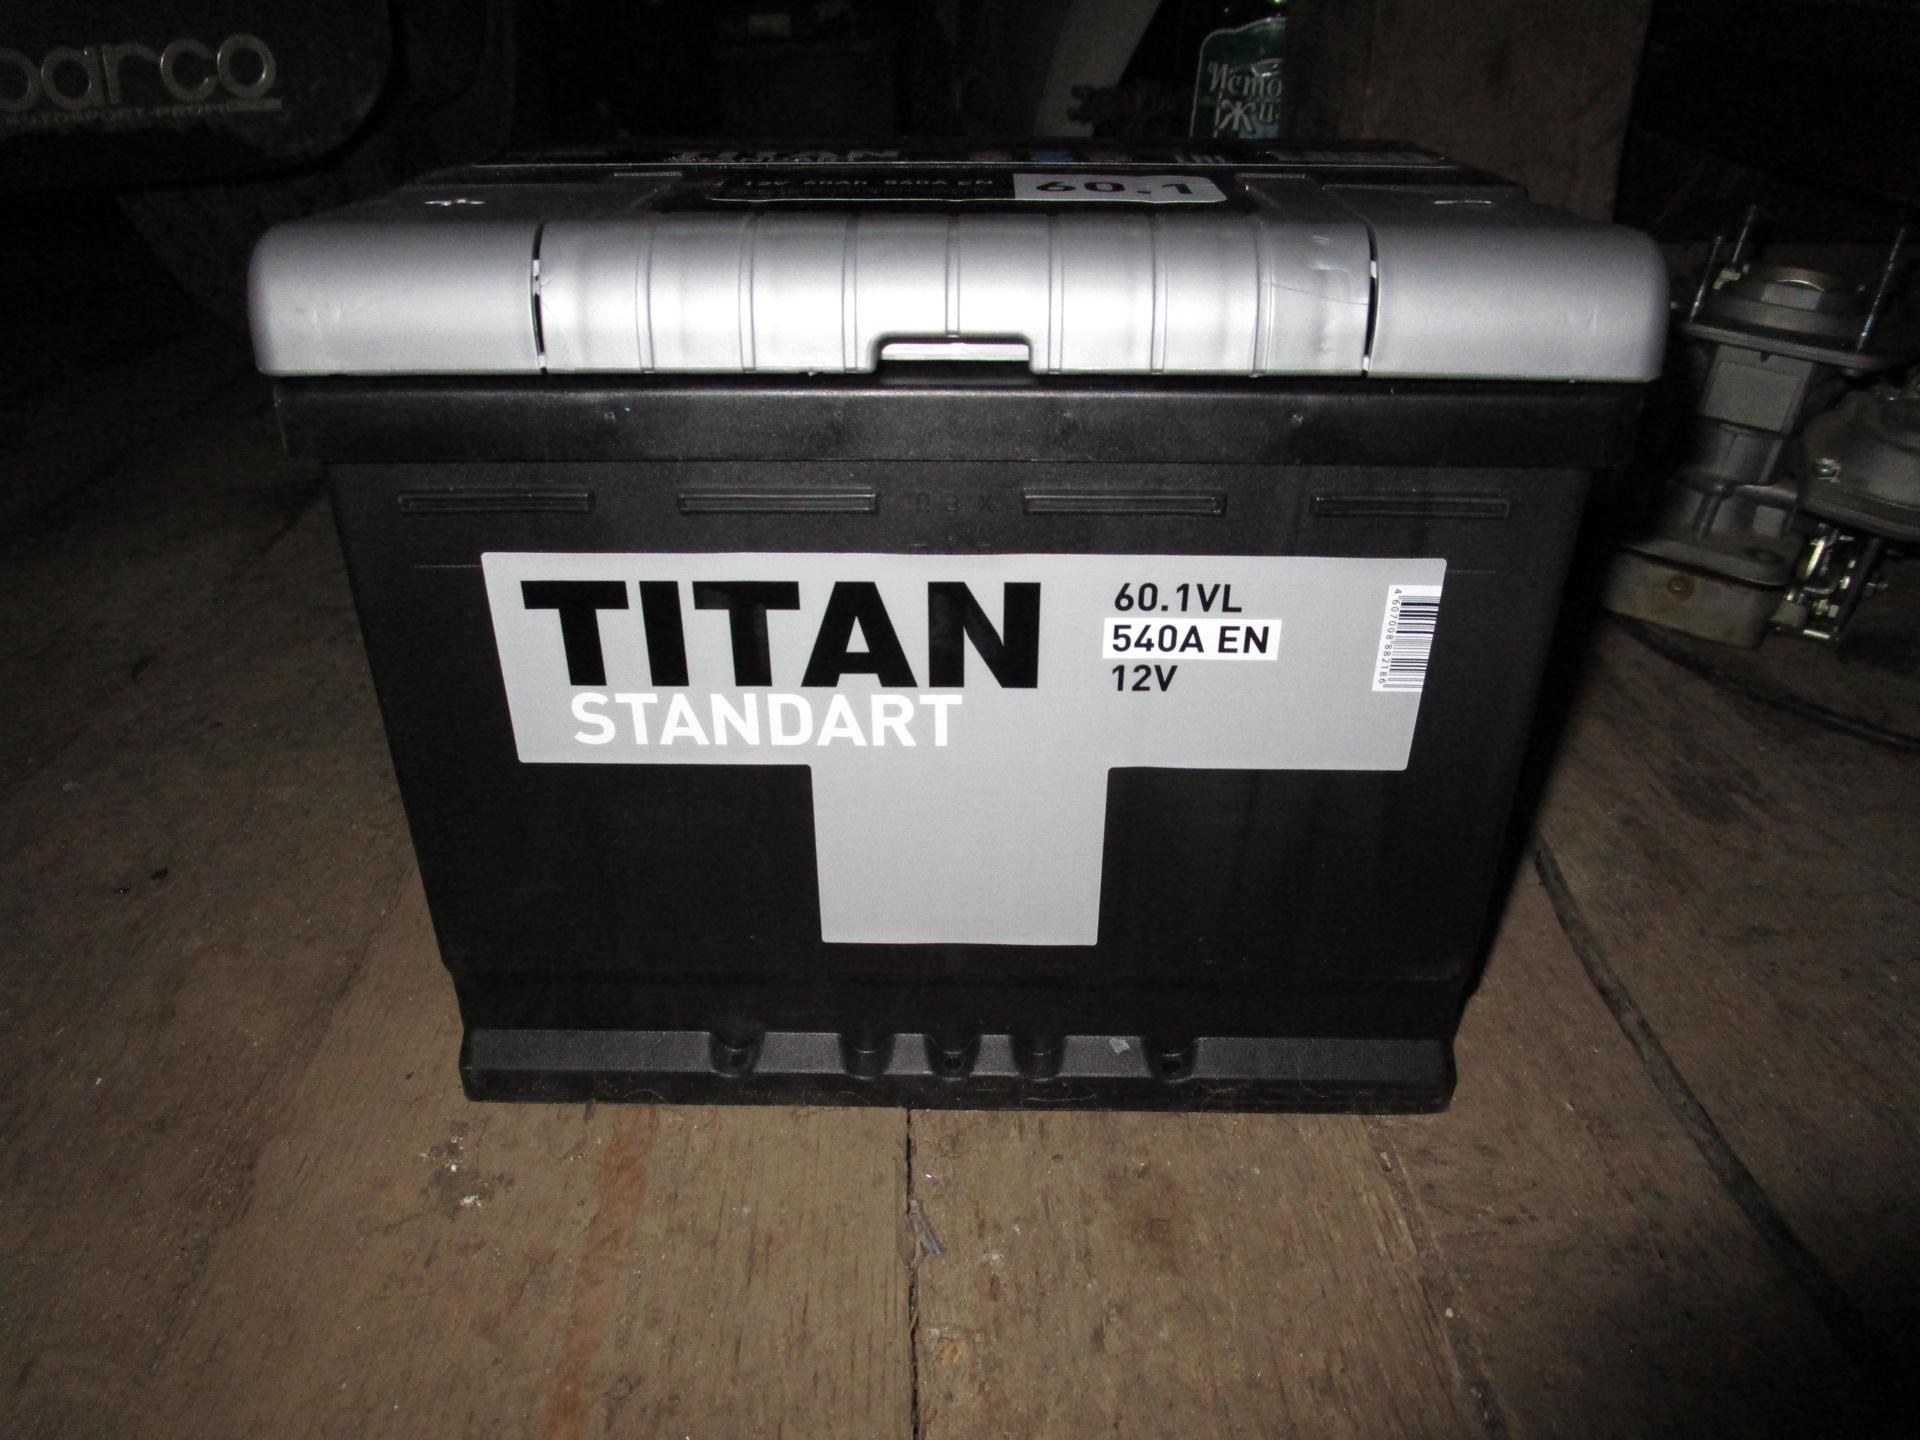 Аккумулятор титан 60 отзывы. Titan 4607008882186 АКБ Titan Standart 6ст-60.1 a/h (+/-) 12v 540 a en 242 х 175 х 190. Аккумулятор Titan Standart 60.0 VL 540a о.п.. АКБ Титан 55 2000 год. АКБ Титан для ВАЗ-2190.